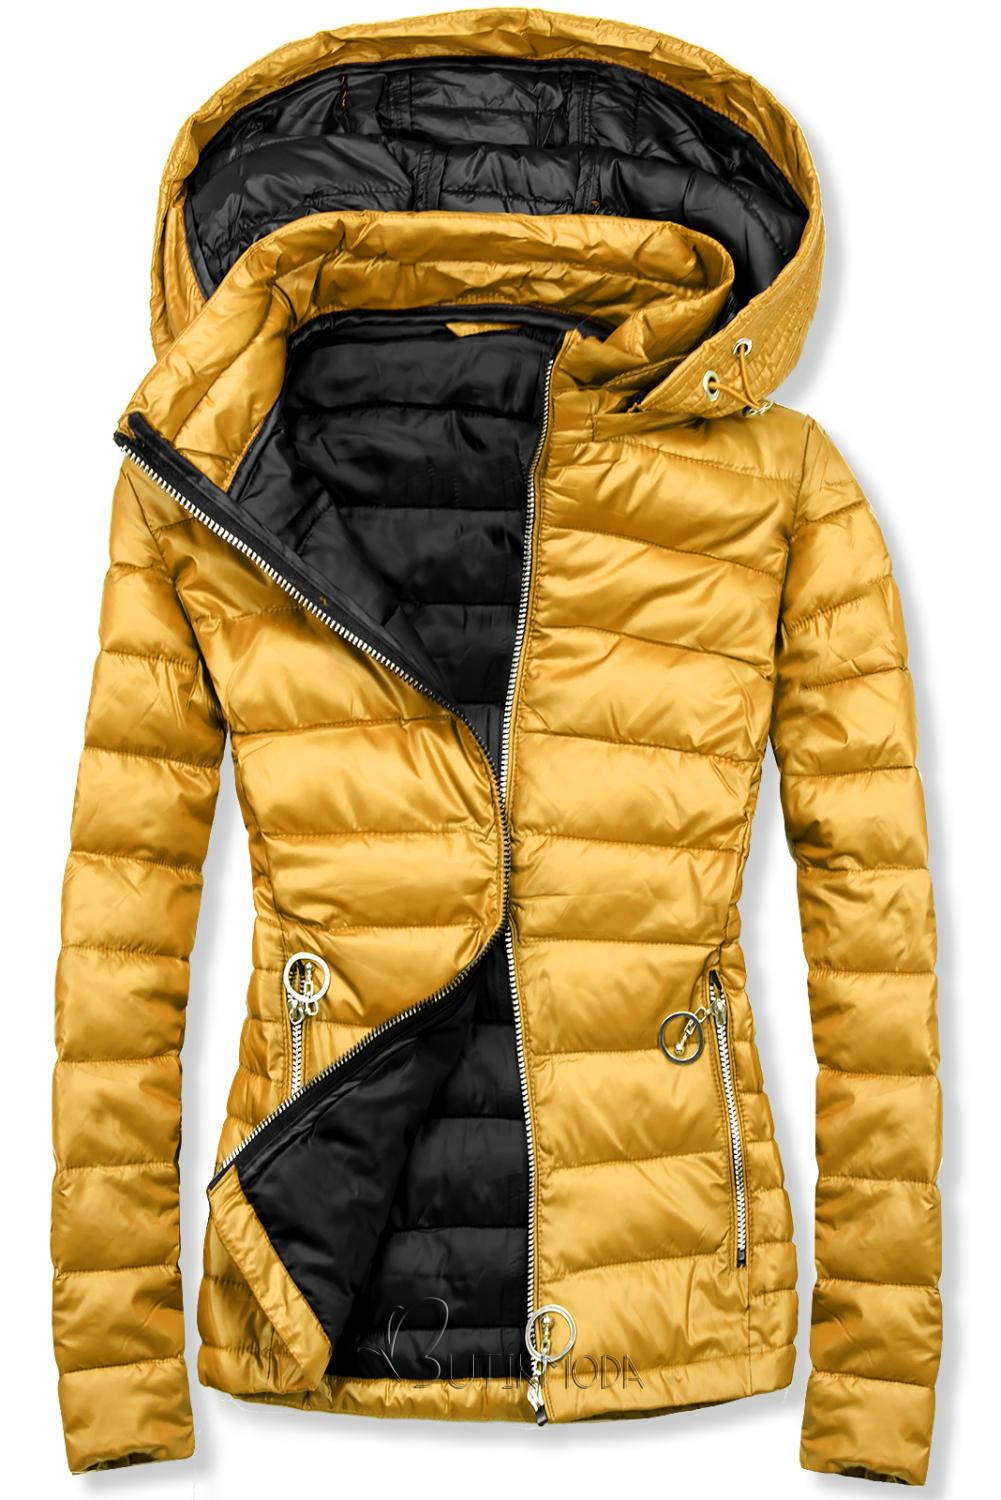 Sárga és fekete színű steppelt kabát